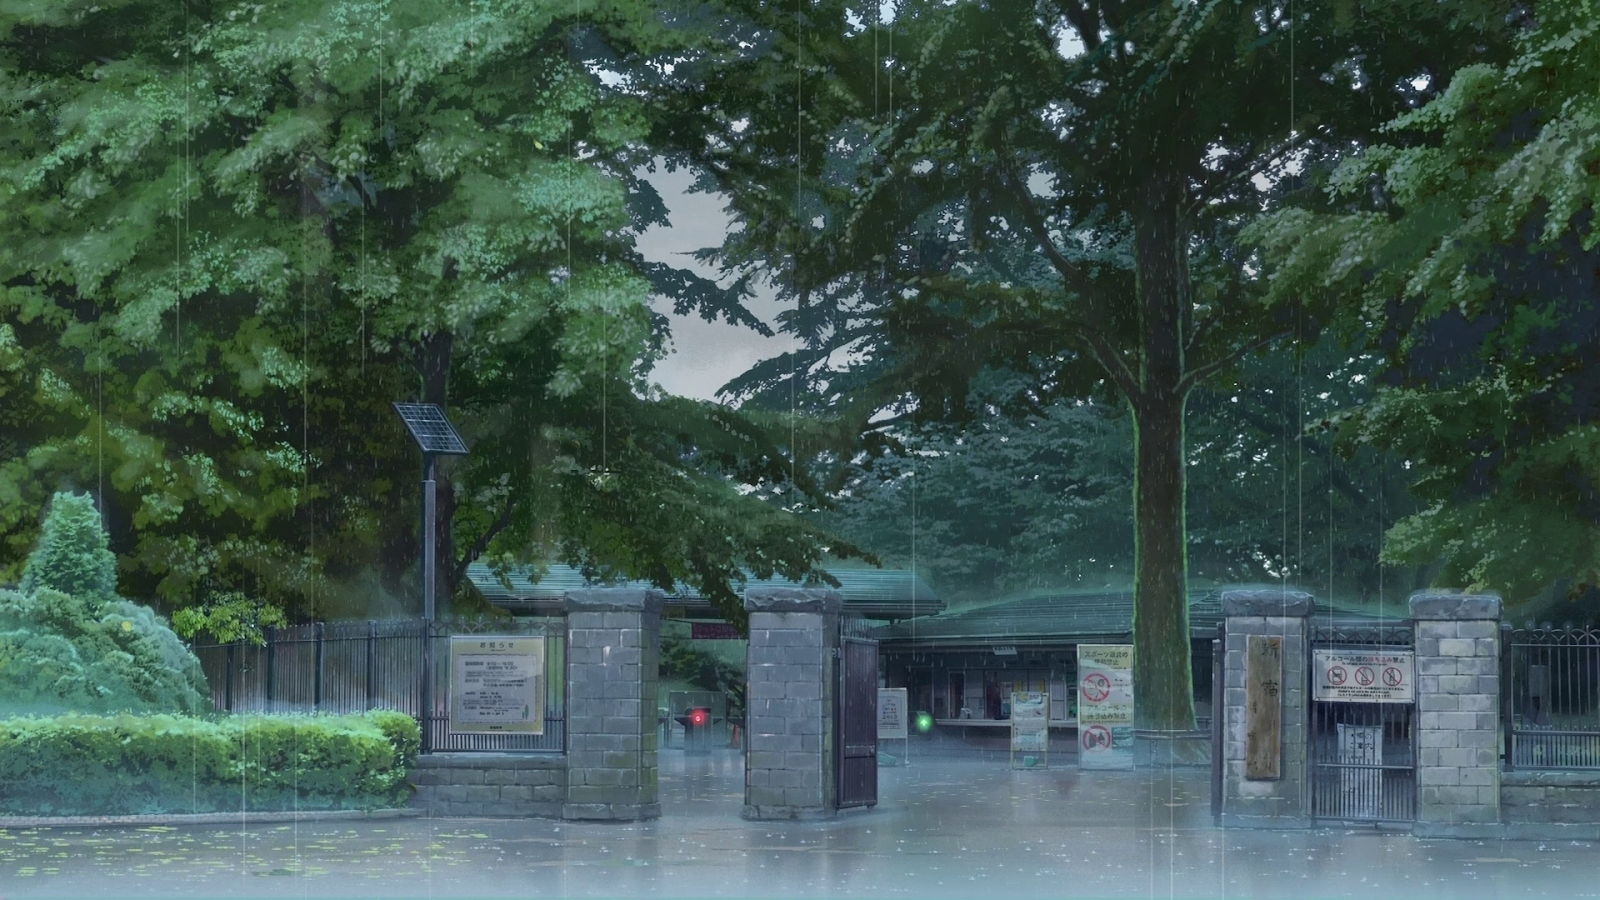 Anime Landscape: Rainy (Anime Background)